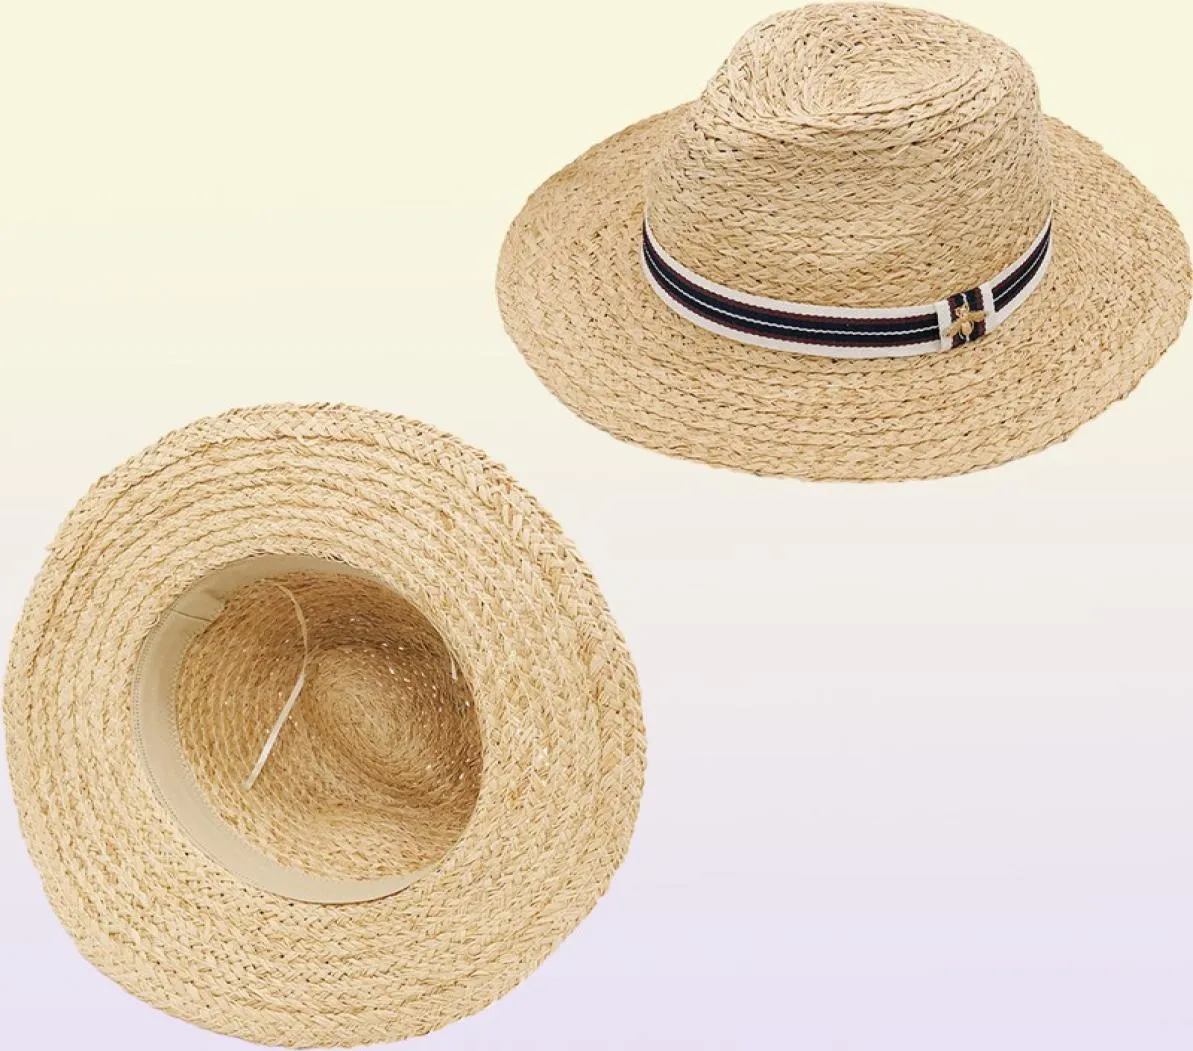 Pequeñas abejas sombreros gorras hombres mujeres ala ancha sombreros casuales sombrero de playa de verano gorra de marca recién llegado sombrero de hierba de alta calidad 5703672